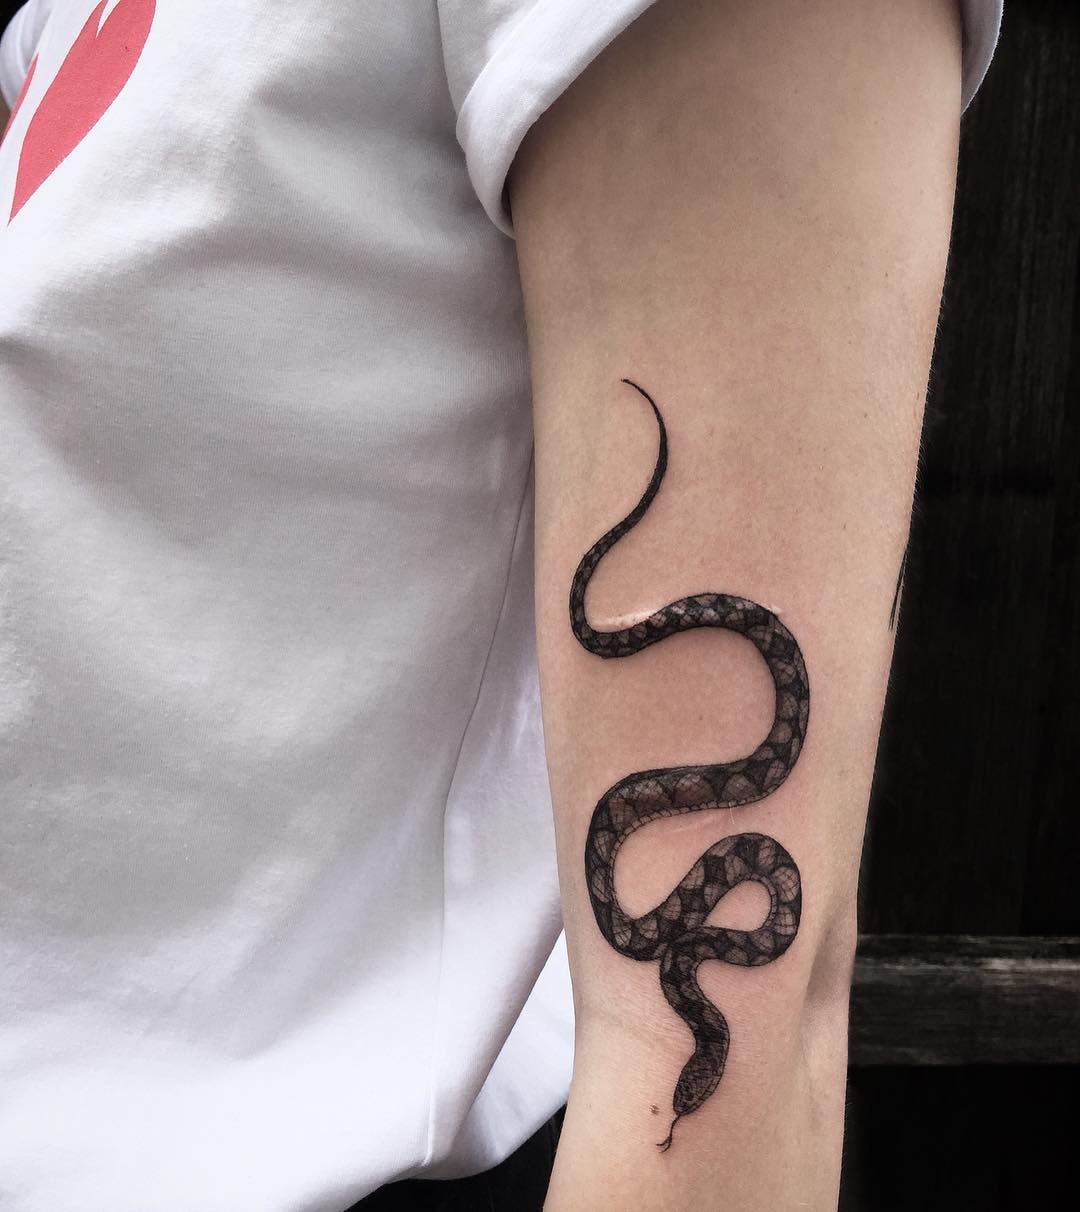 帅到爆炸的纹身图案——蛇 - 知乎